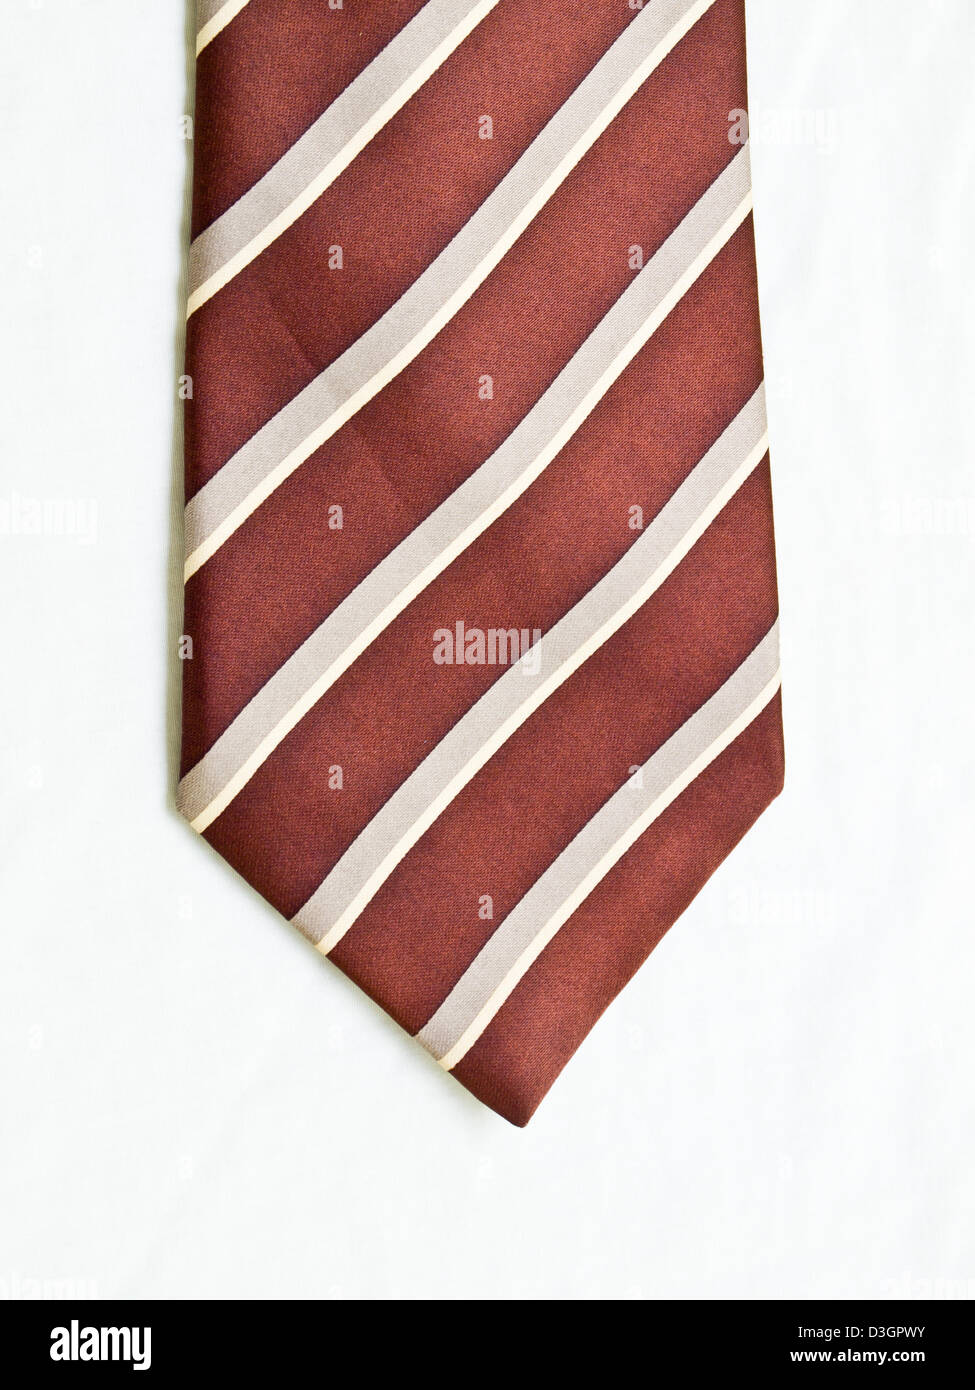 A aufgerollt gestreifte braune und weiße Krawatte isoliert auf weißem Hintergrund. Stockfoto